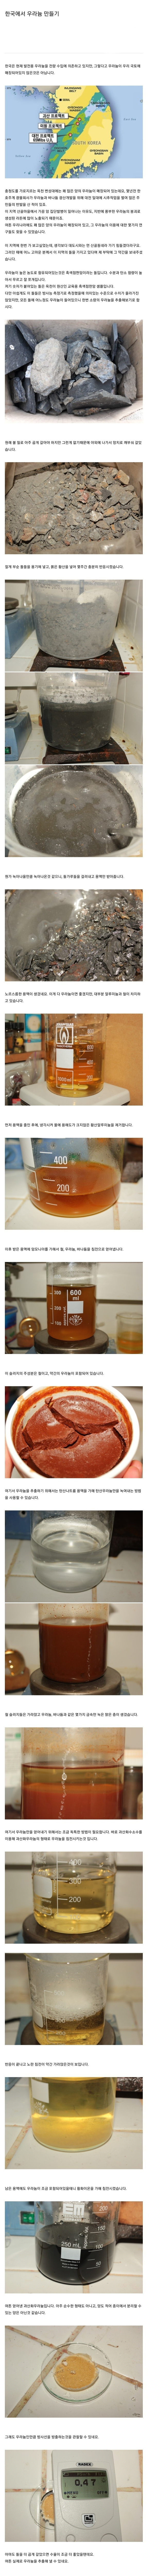 한국에서 우라늄 만들기.jpg